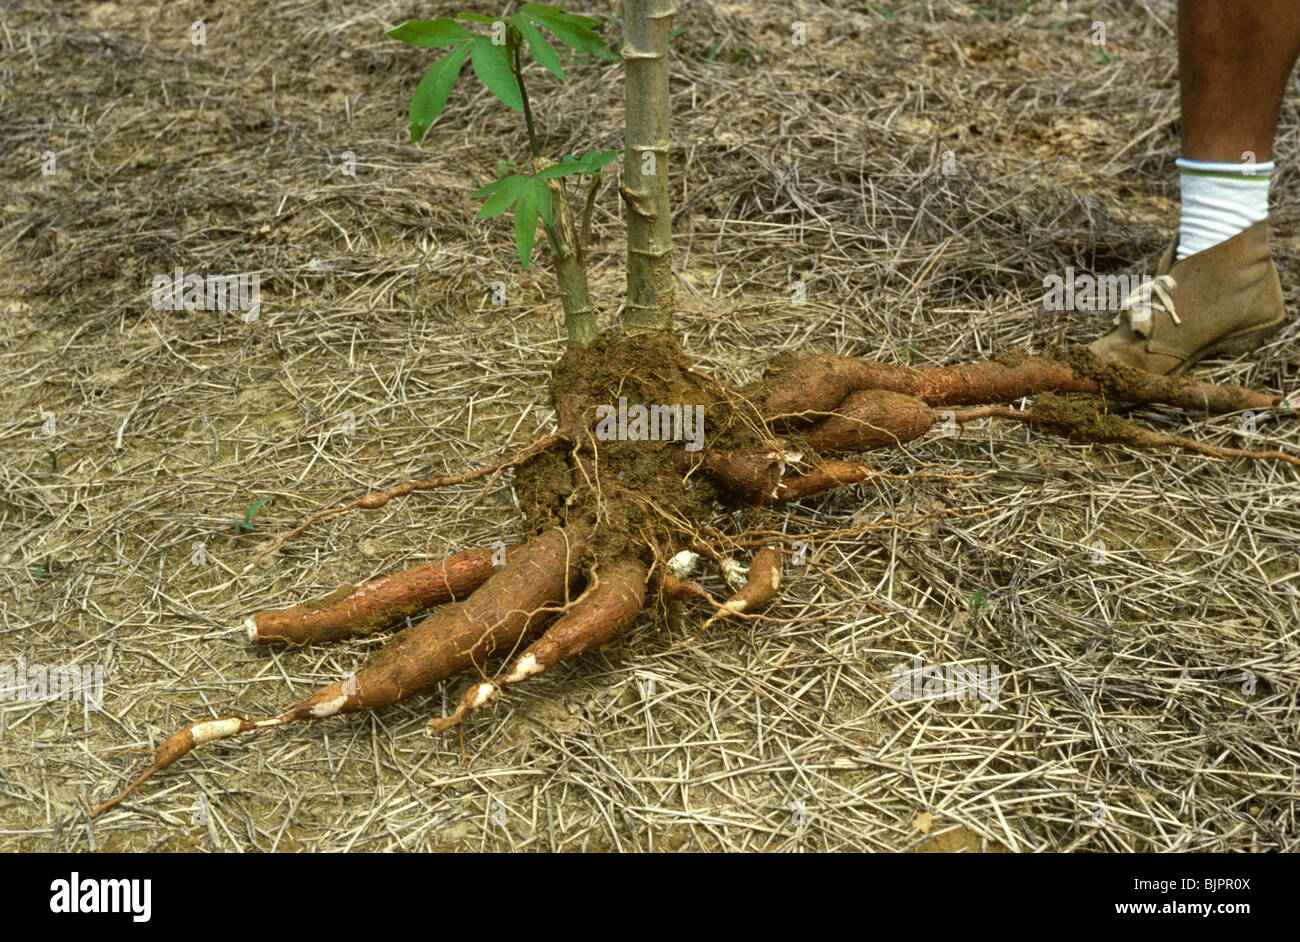 Maniok oder Maniok (Manihot Esculenta) Wurzel mit einem Mann Fuß um die Größe Stockfoto